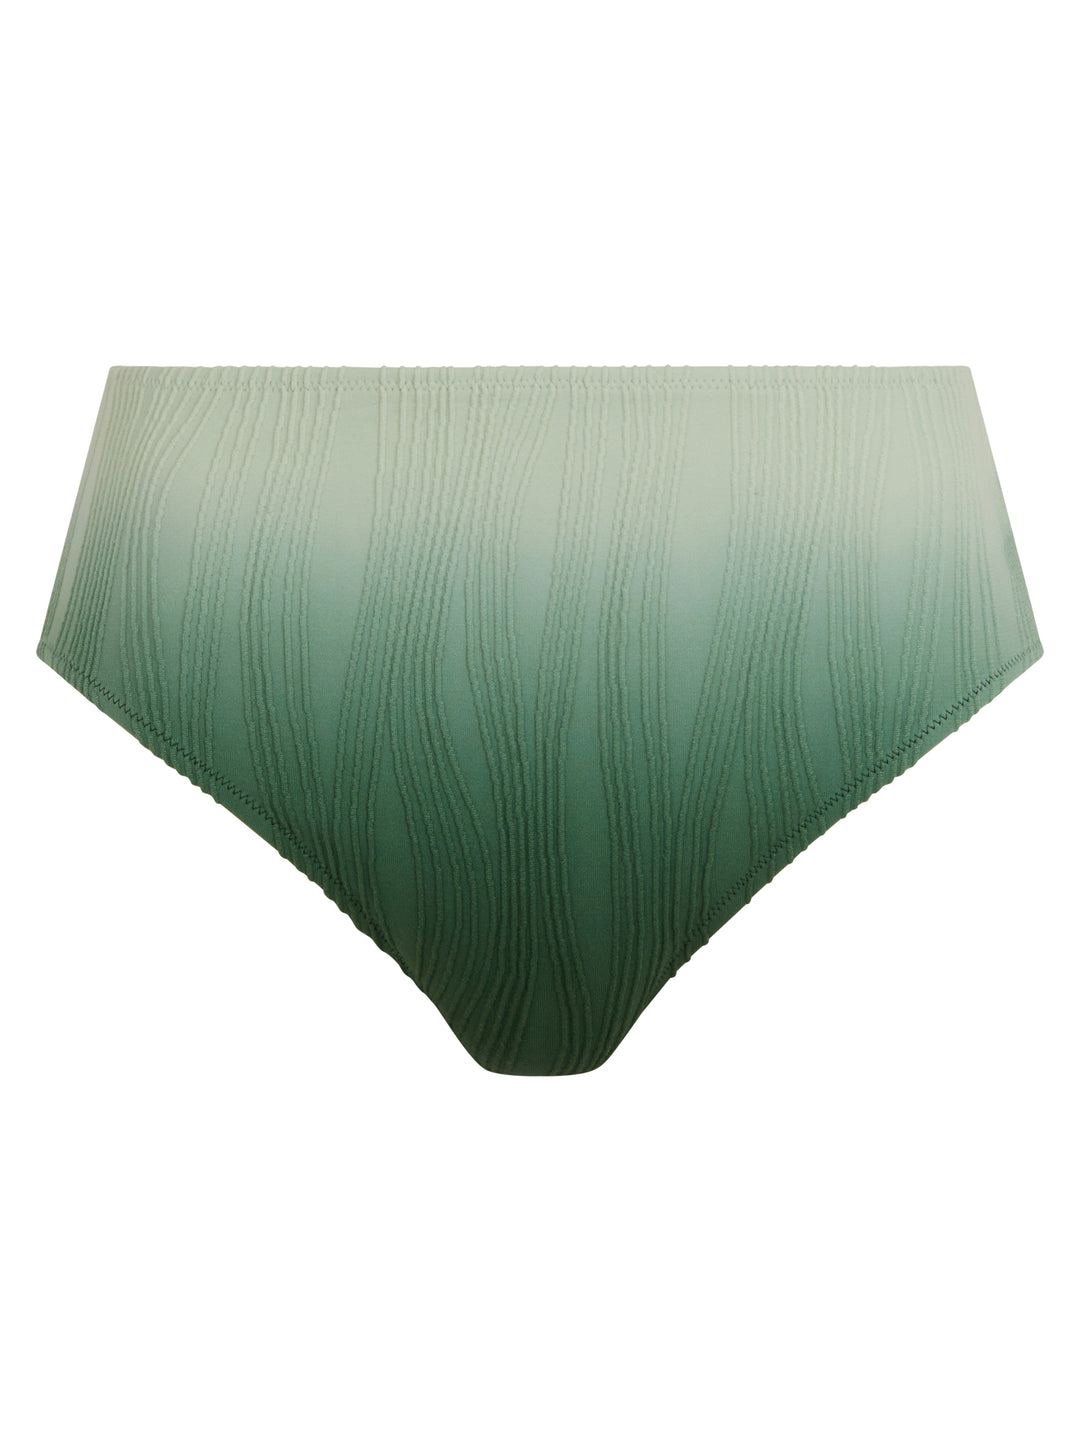 Chantelle Swimwear - Swim One Size Full Brief Green tie & dye